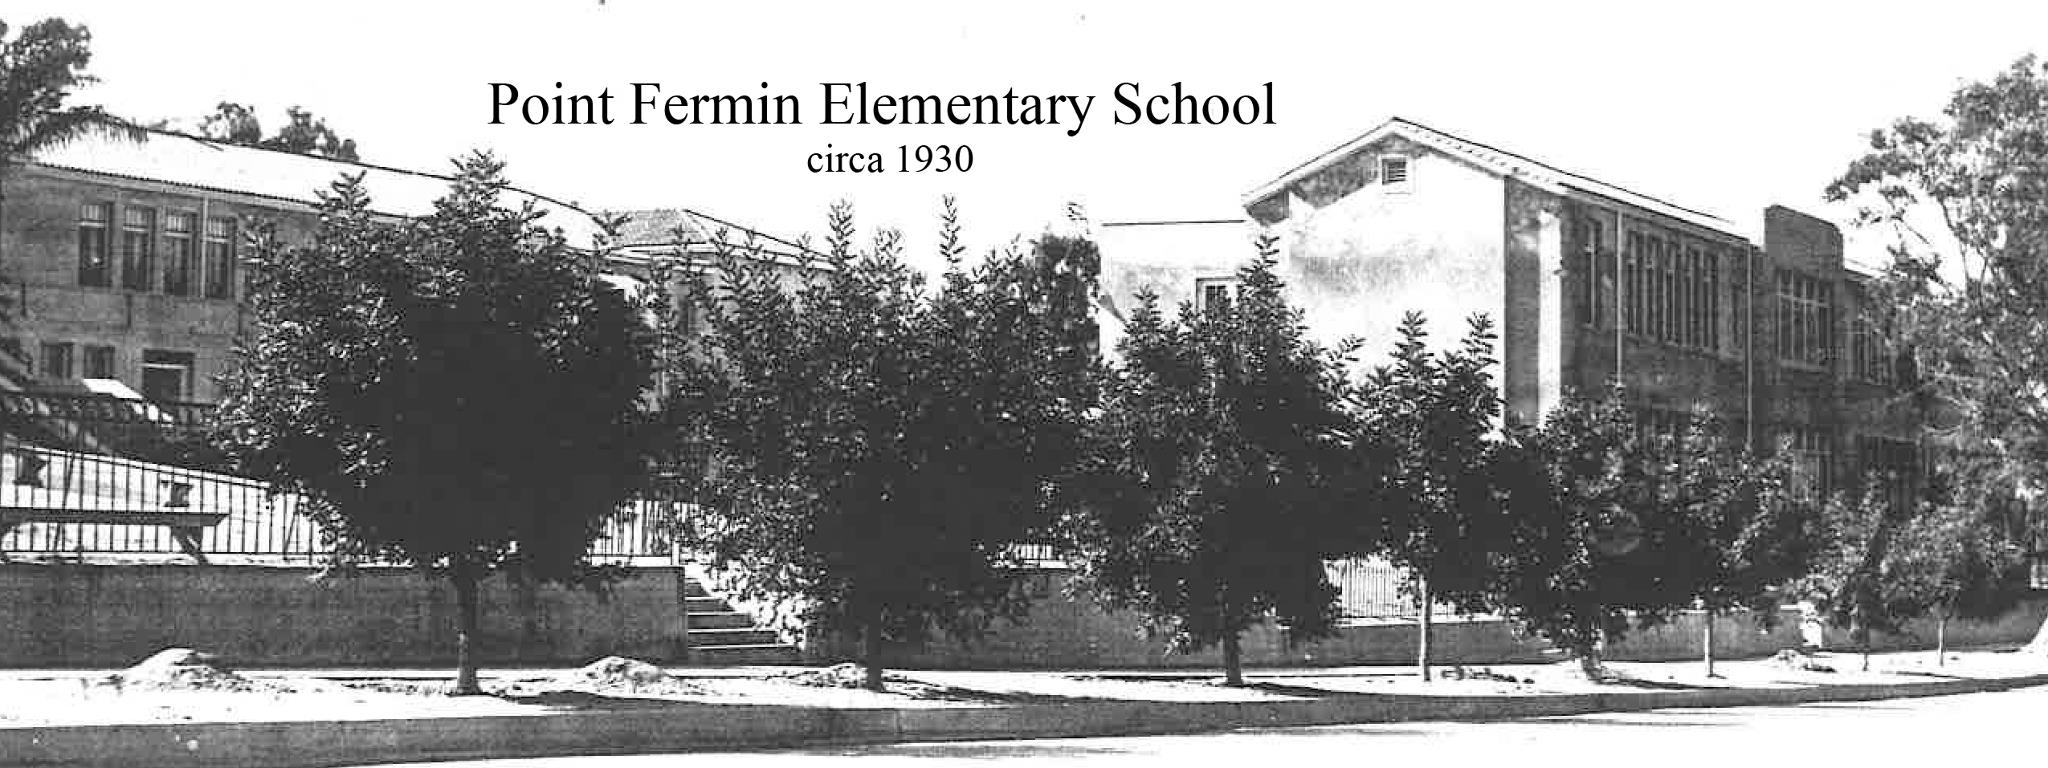 Point Fermin Elementary School